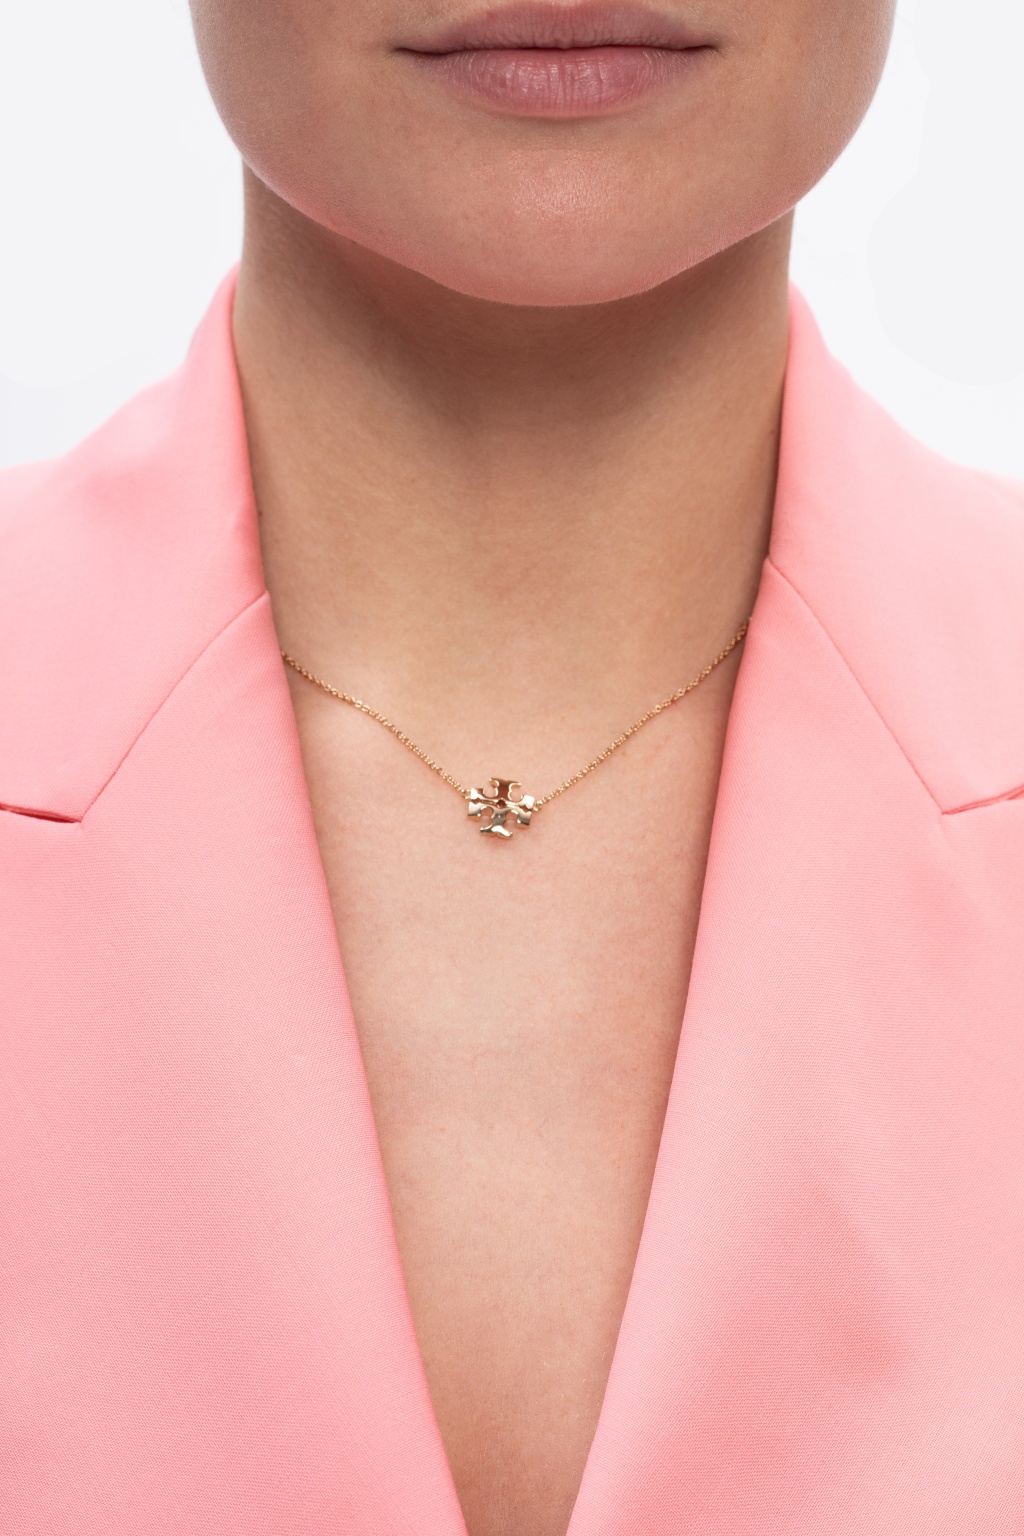 Tory Burch Necklace with logo charm | Women's Jewelery | Vitkac